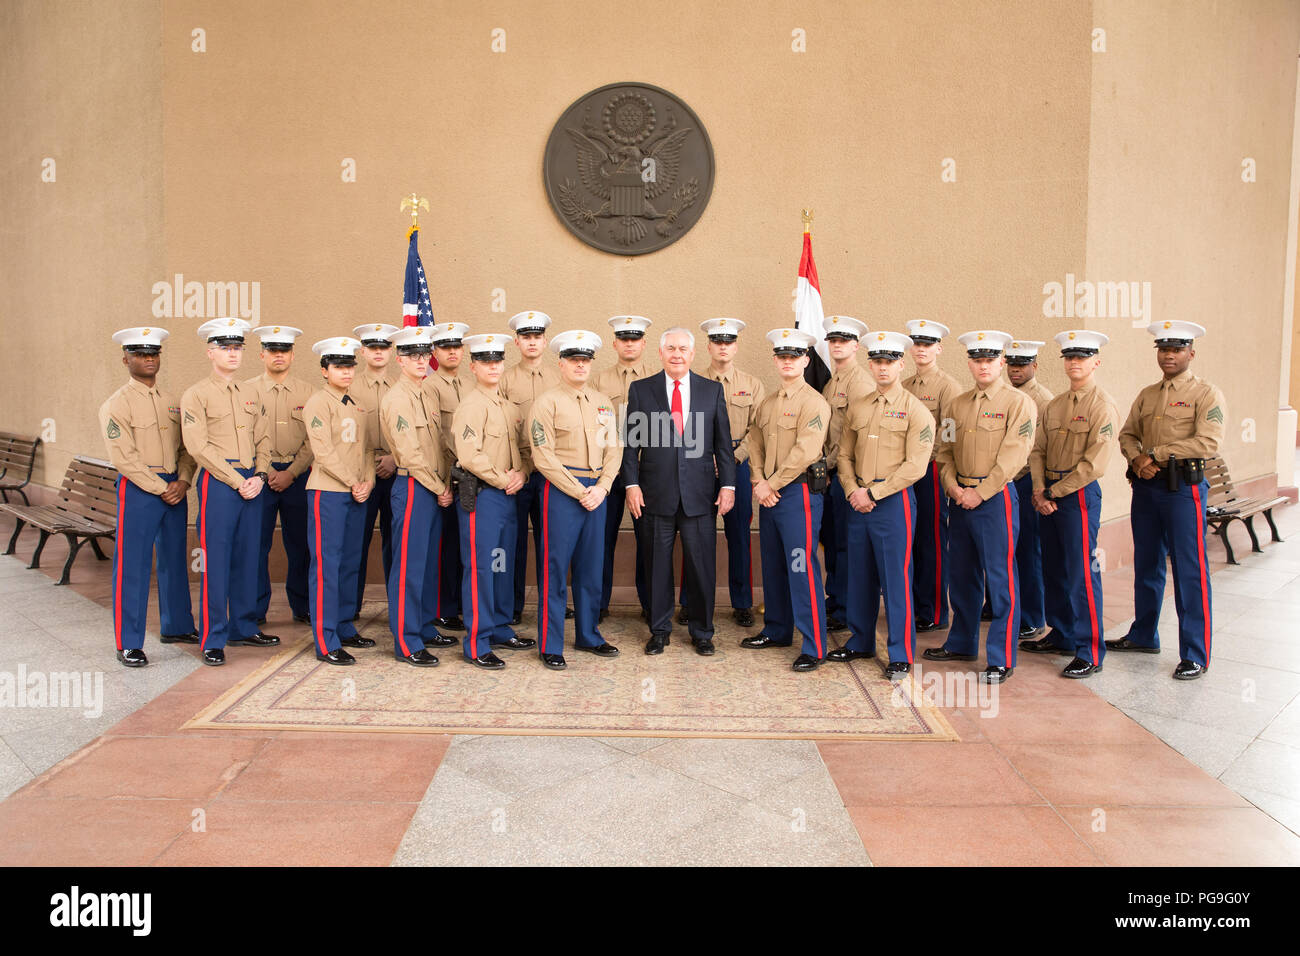 La secrétaire d'État des États-Unis, Rex Tillerson pose pour une photo avec les Marines américains de l'ambassade des Etats-Unis au Caire au Caire, Égypte le 12 février 2018. Banque D'Images